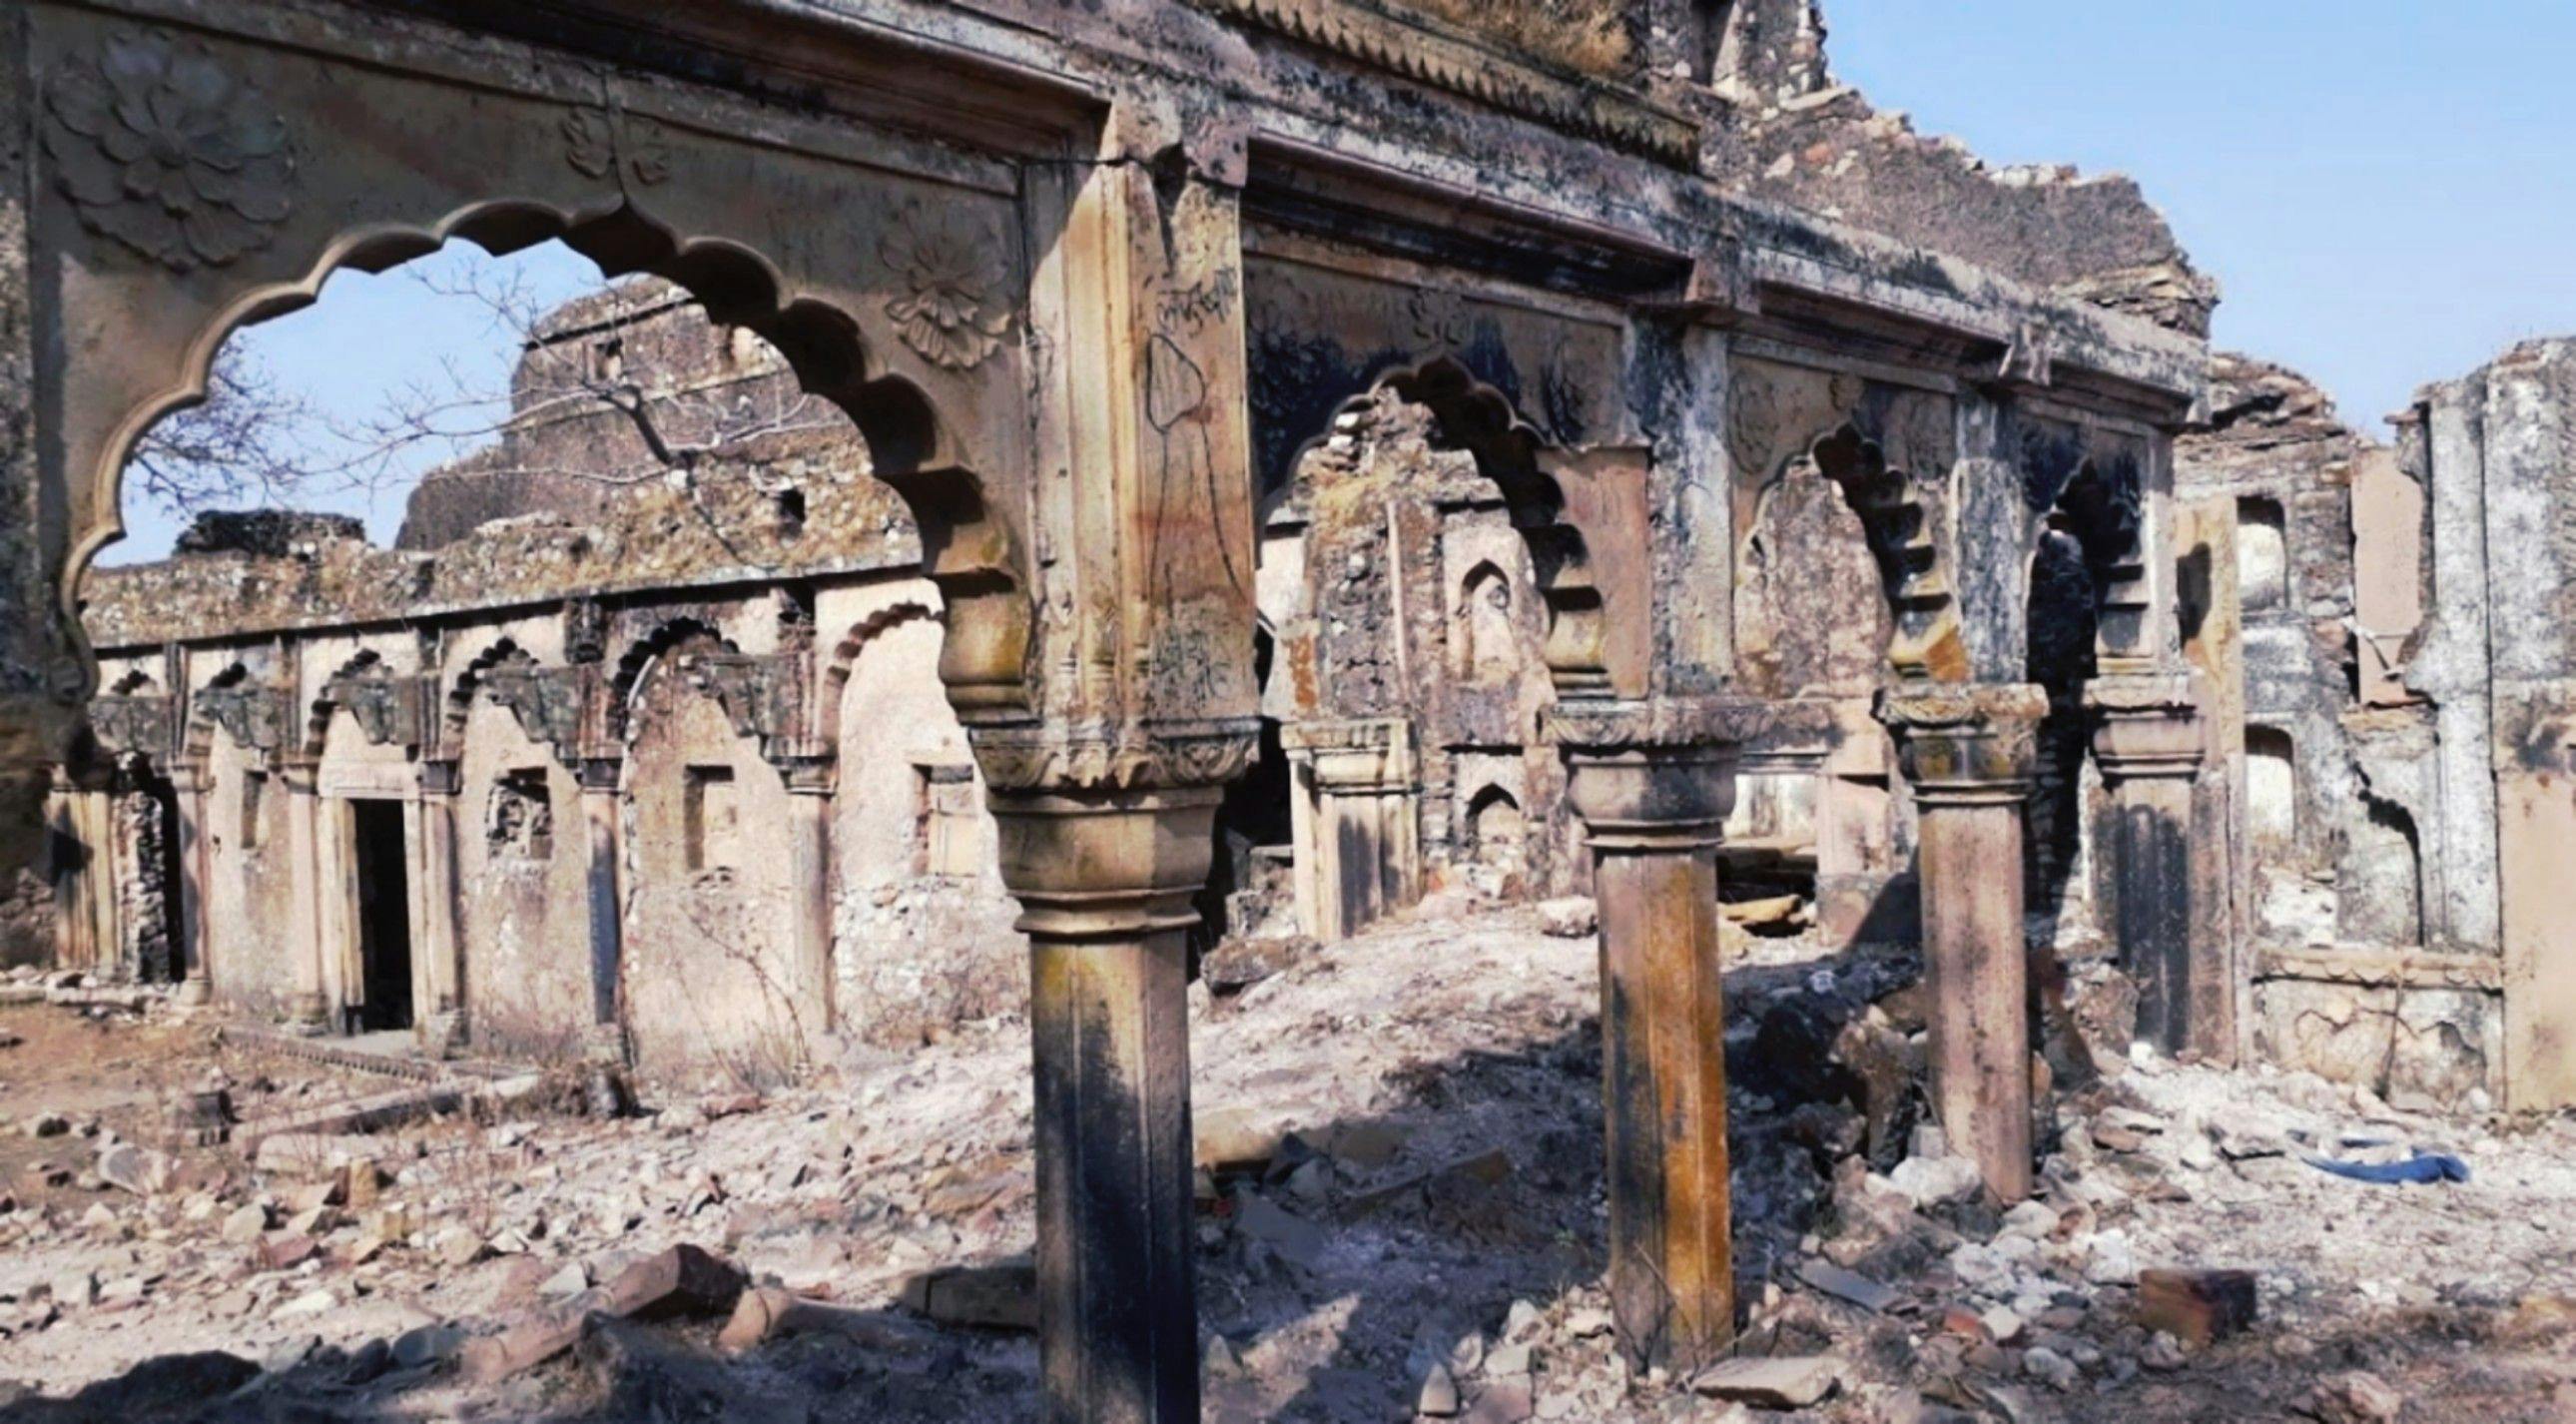 Ruins of the Rang Mahal of Vijaygarh, popularly known as Princess Chandrakanta’s Palace